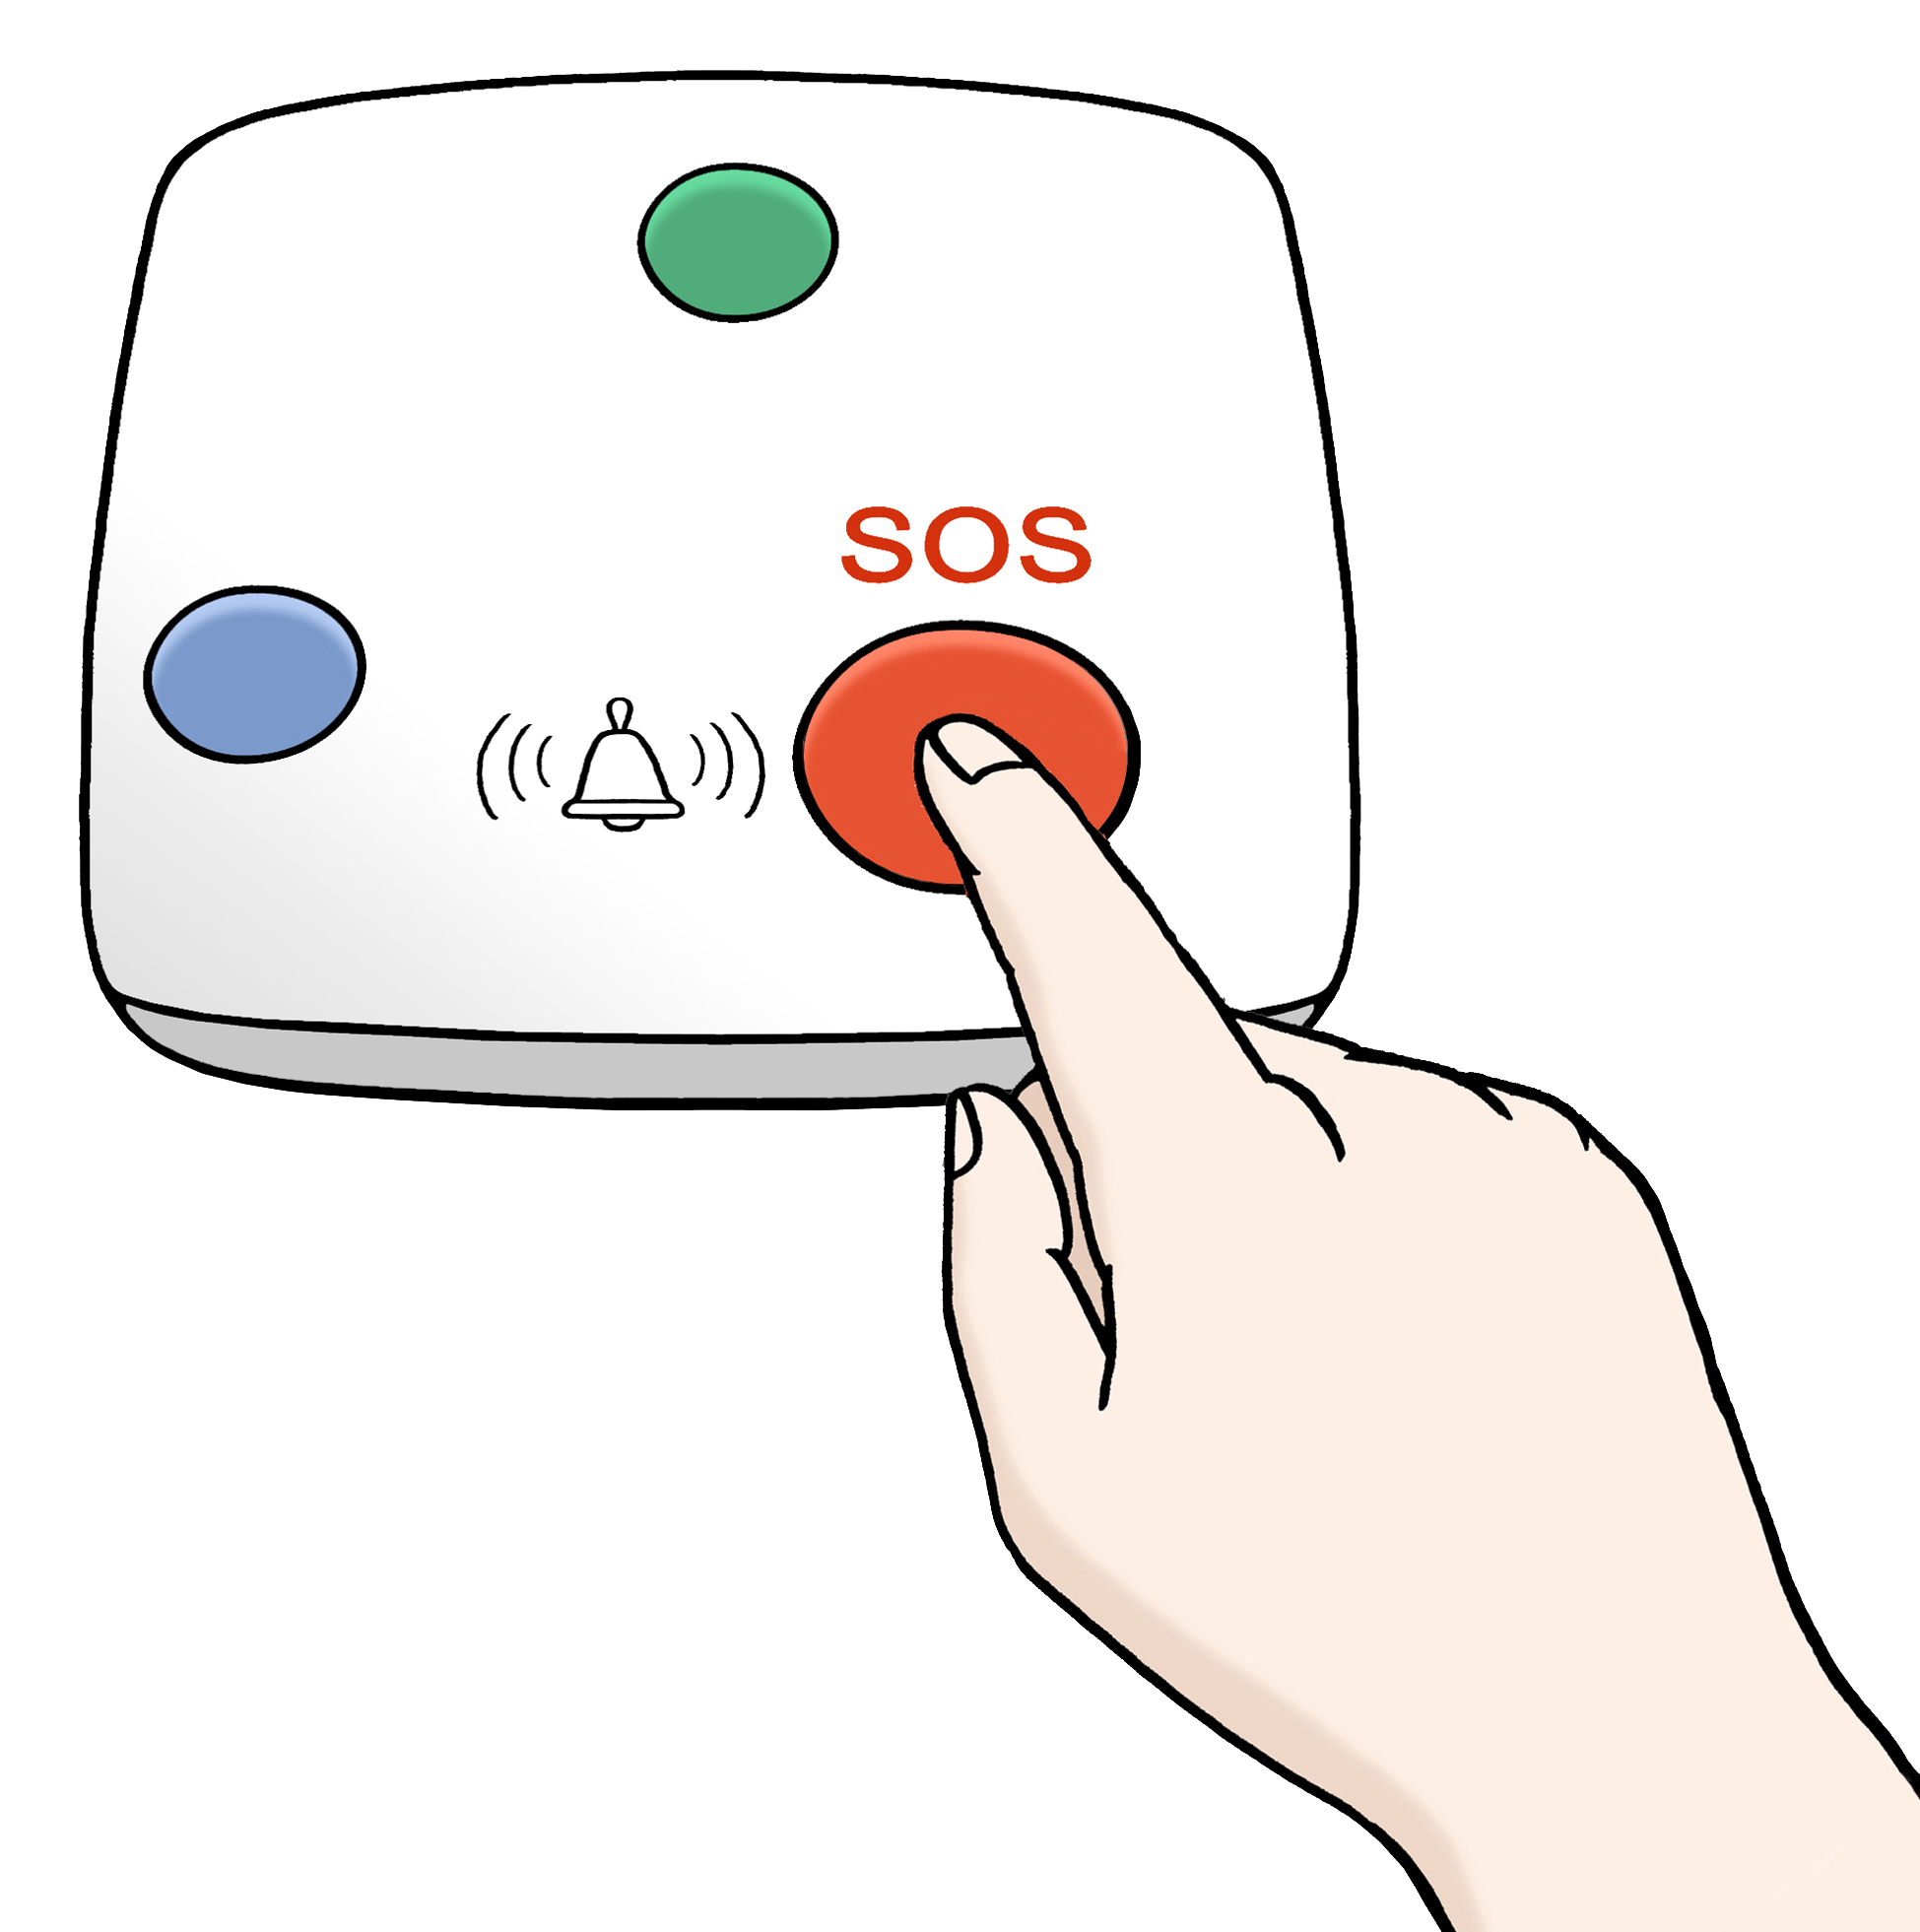 Leichte Sprache Bild: Eine Hand drückt einen SOS Knopf auf einer Fernbedienung